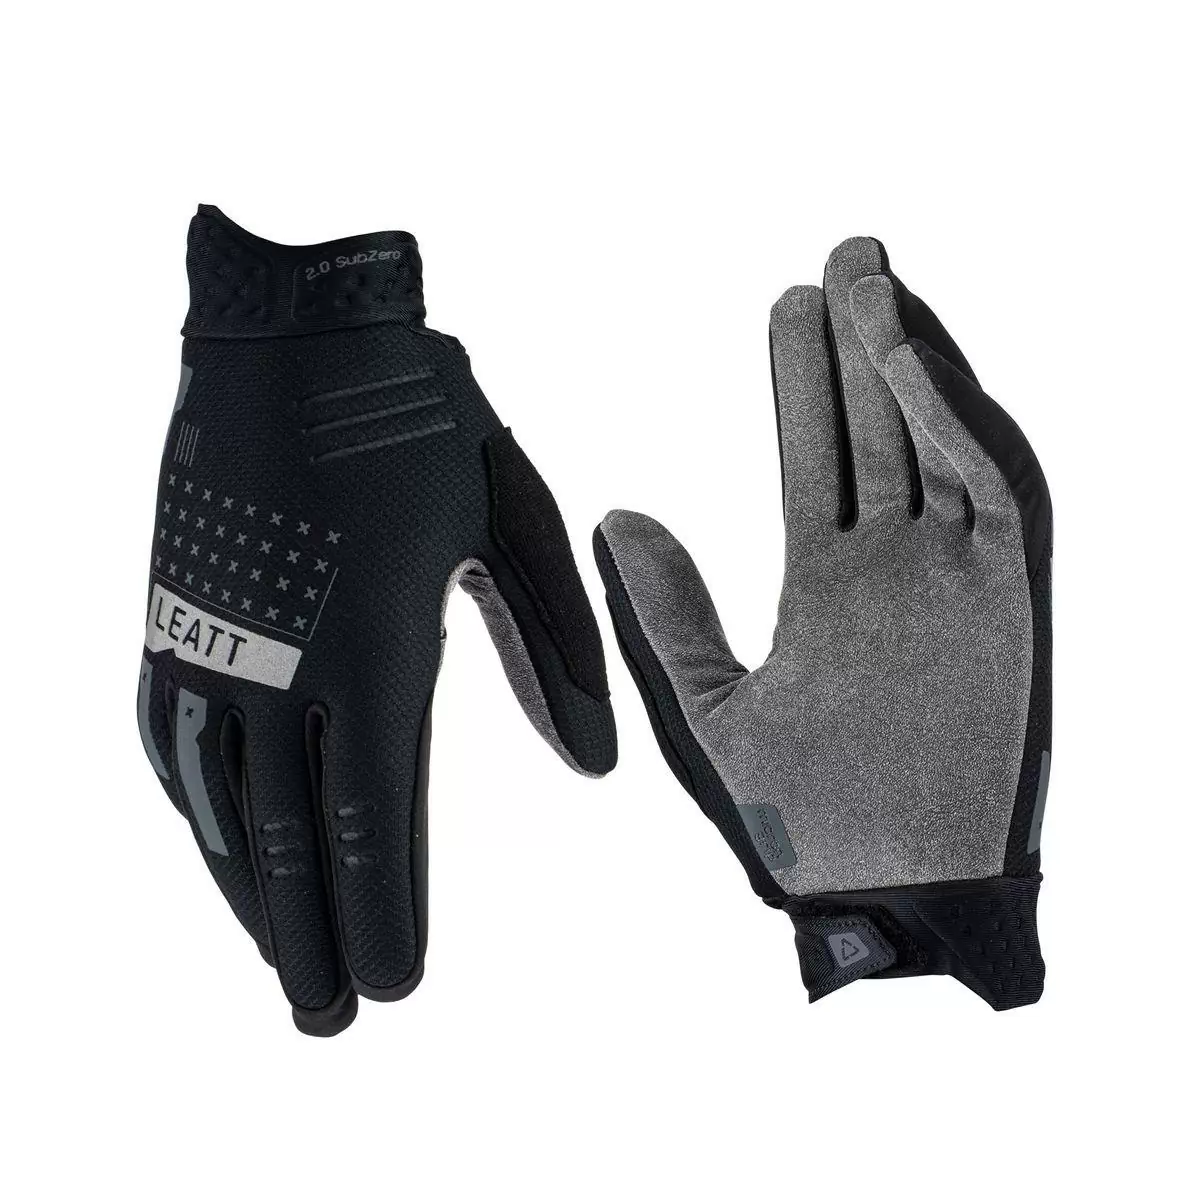 Winter Glove Mtb 2.0 subzero Black size S - image